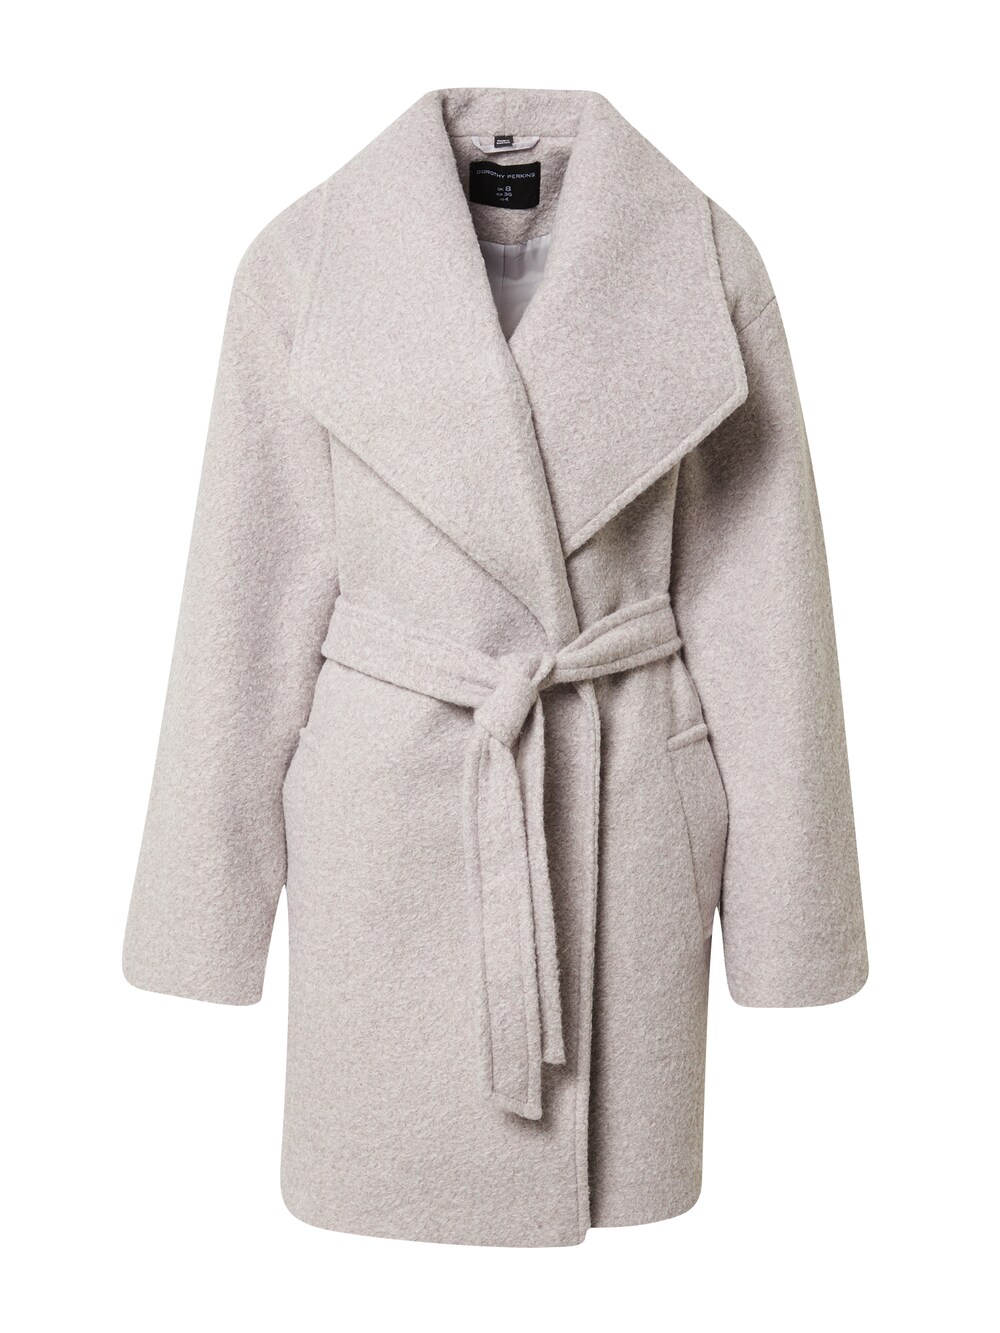 Межсезонное пальто Dorothy Perkins, серый межсезонное пальто dorothy perkins кэмел